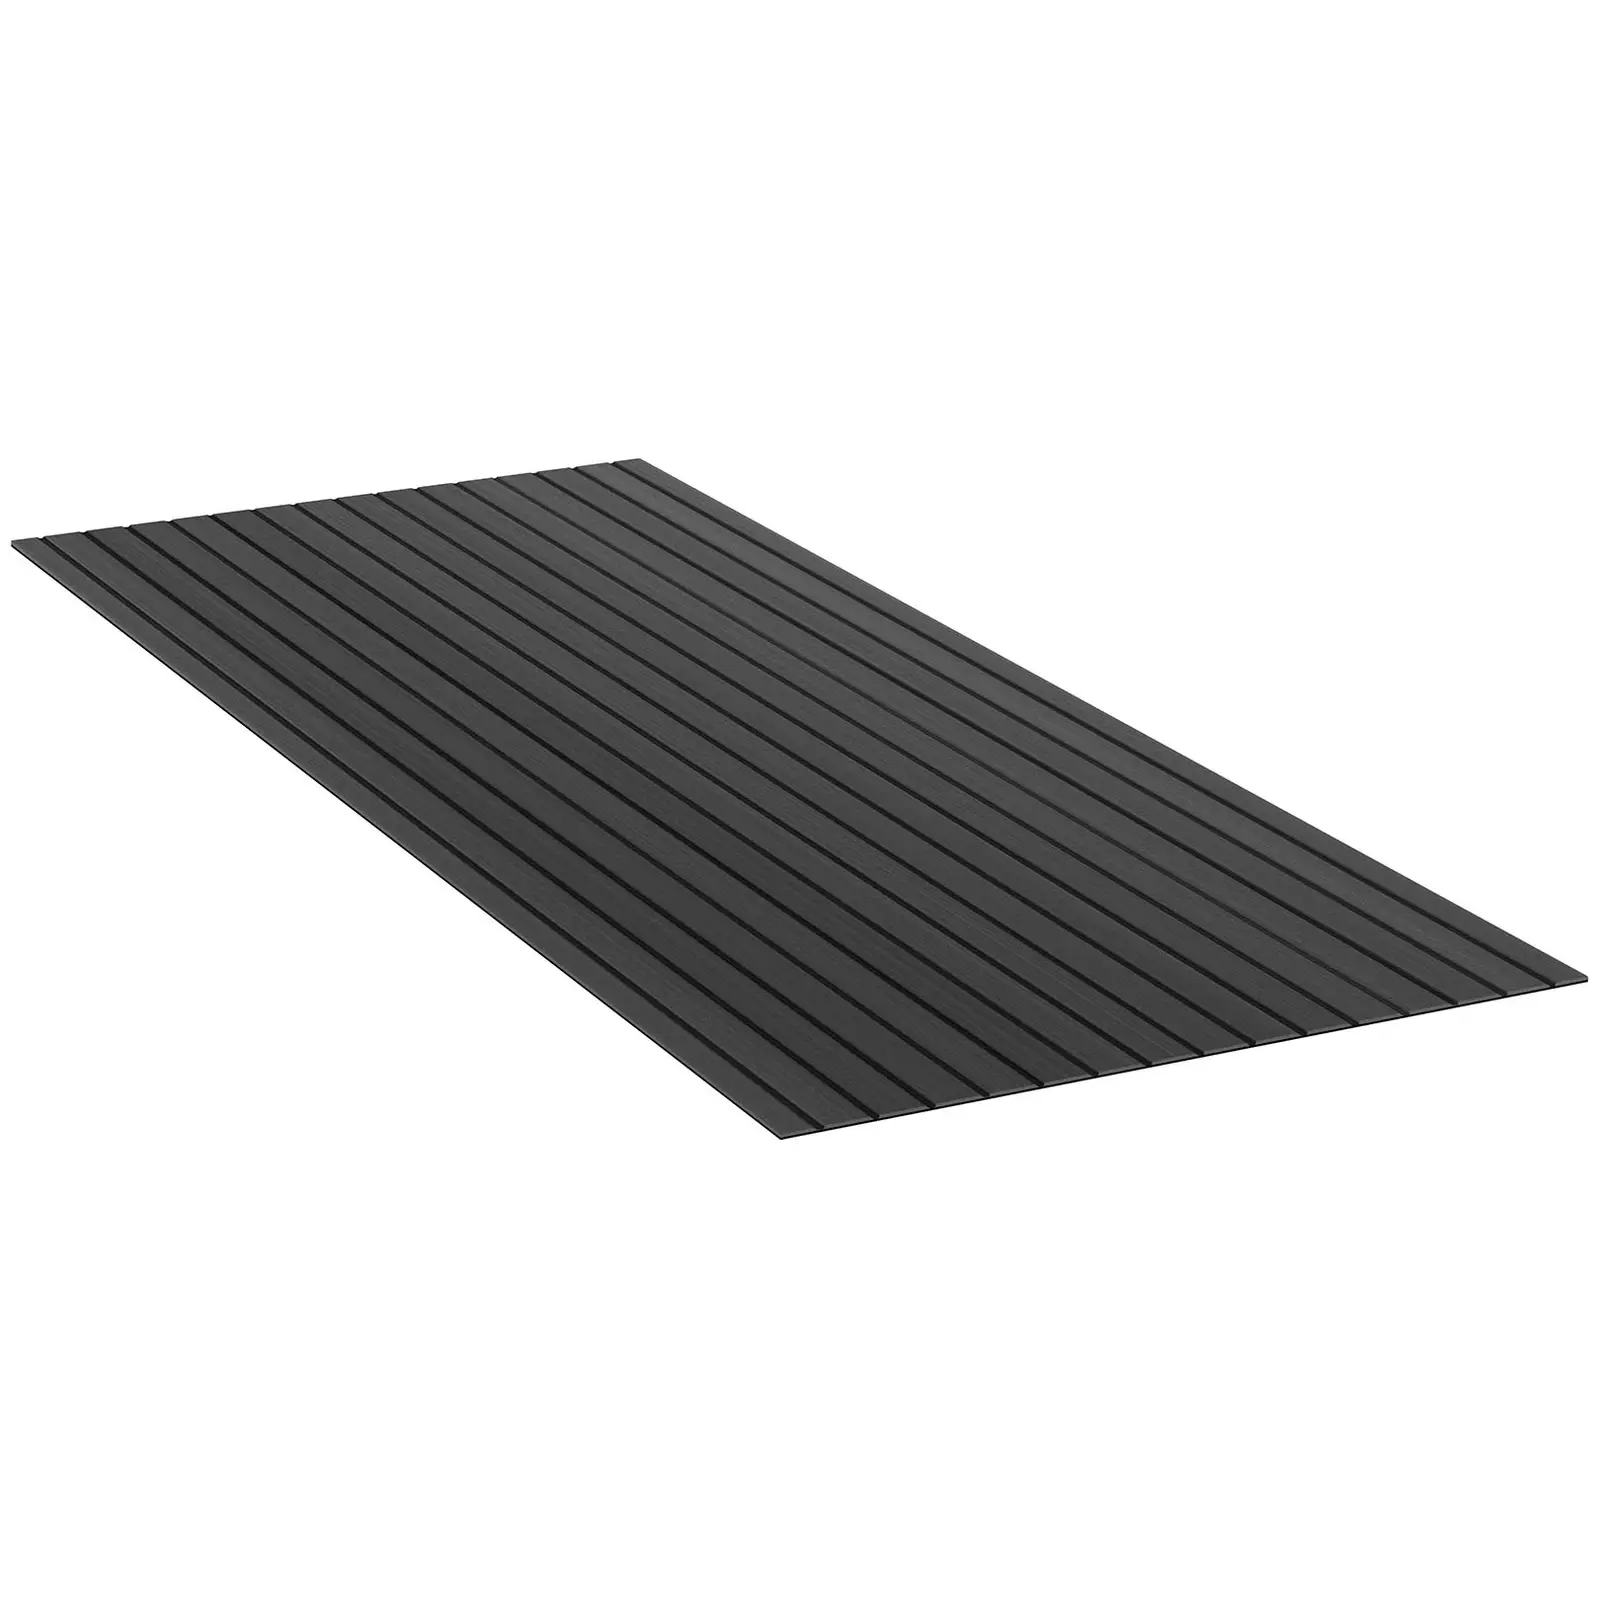 Boat Flooring - 240 x 90 cm - anthracite/black